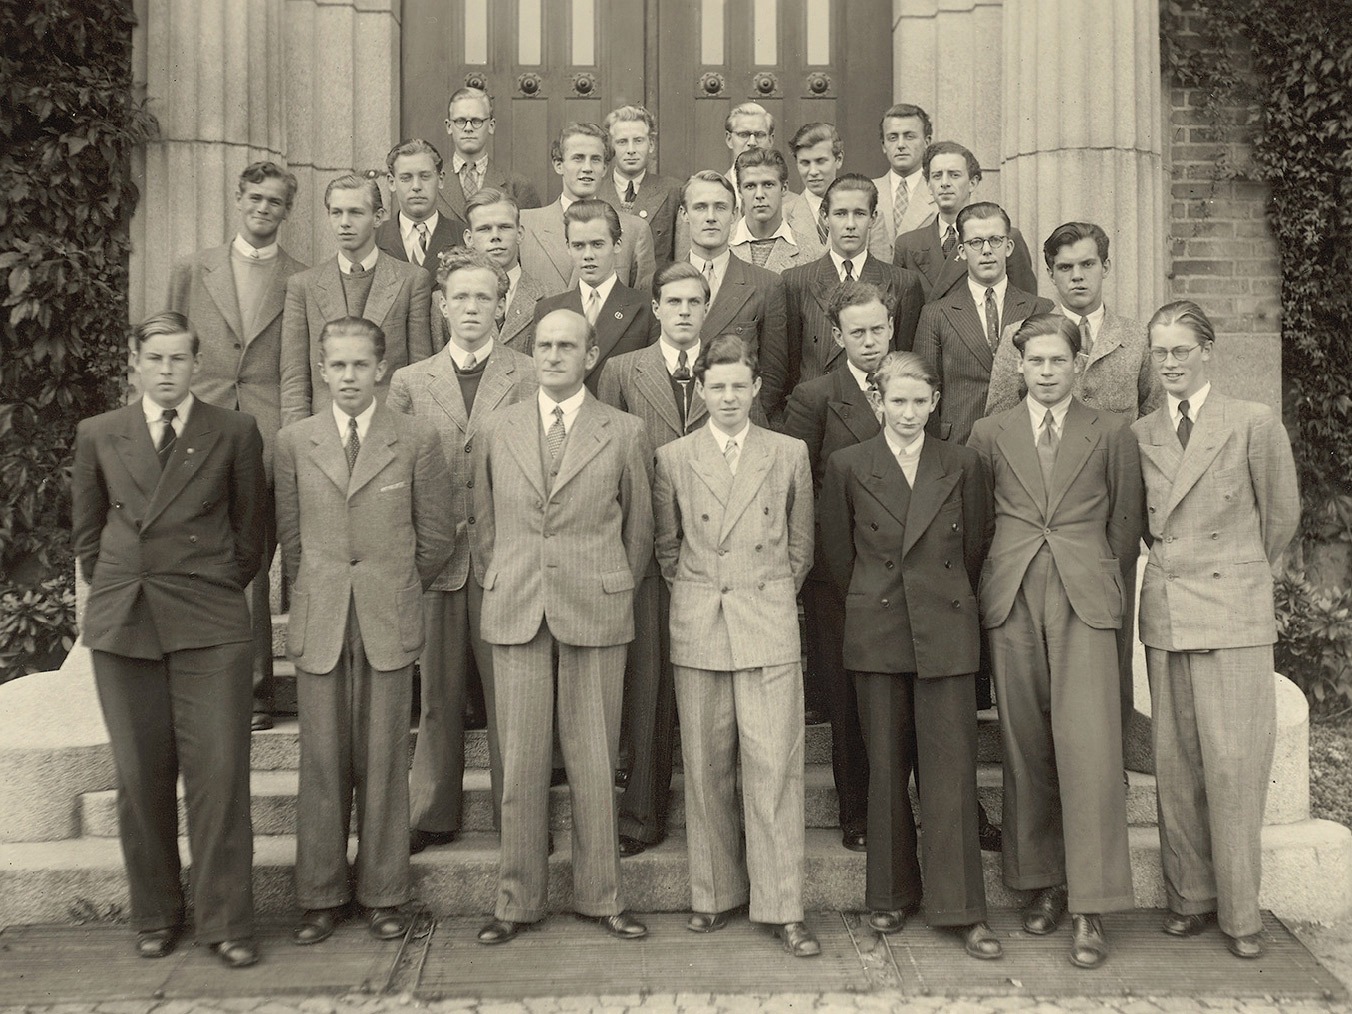 Gruppfoto, unga män i ljusa 1940-talskostymer uppställda i fem rader framför imponerande byggnad. Ingvar Kamprad i mitten.